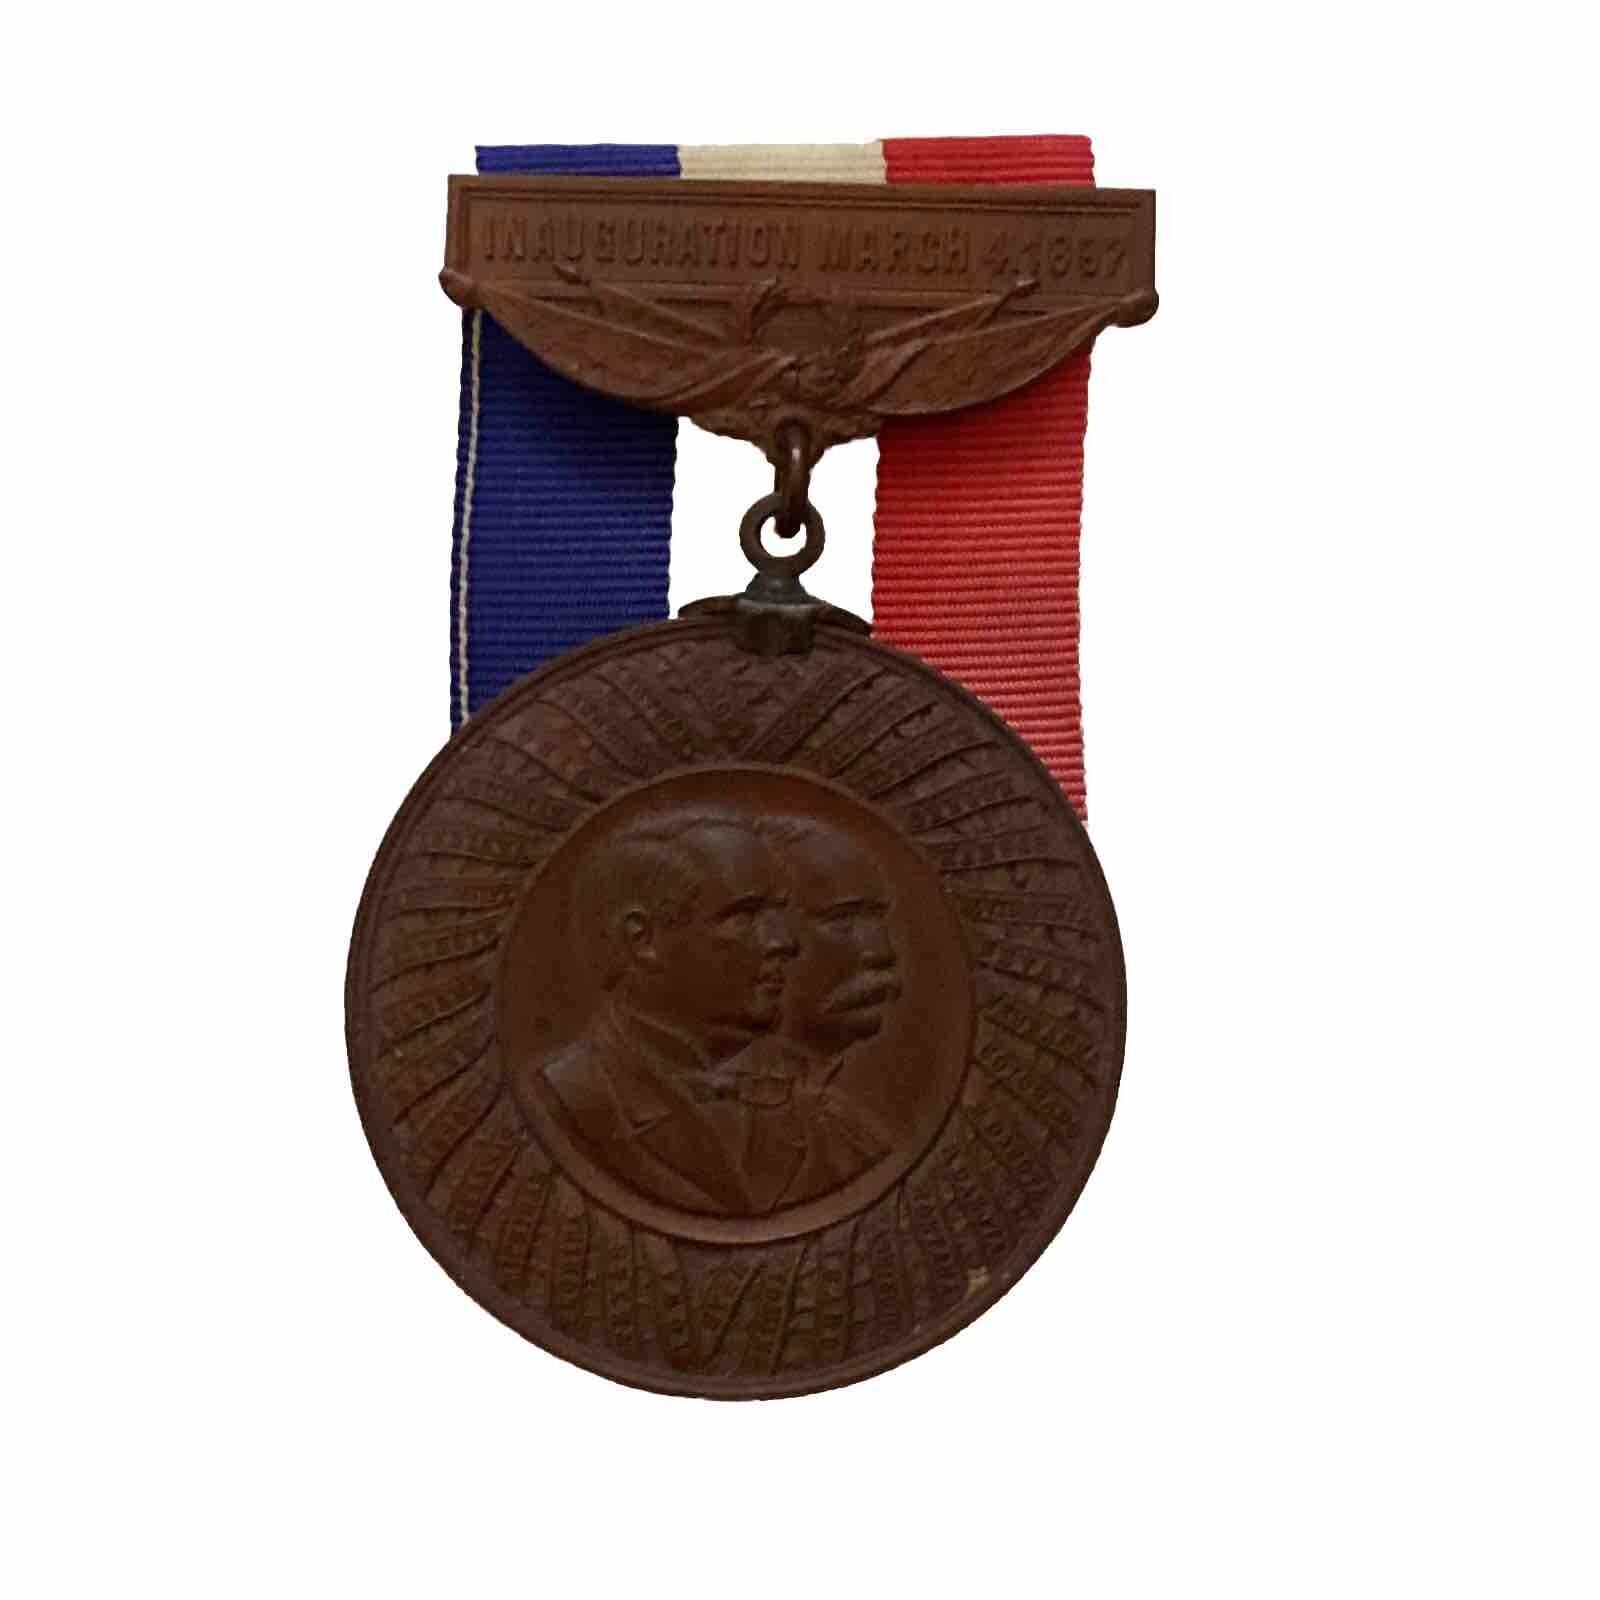 1897 William McKinley & Garret Hobart Inauguration Medal Inaugural Badge